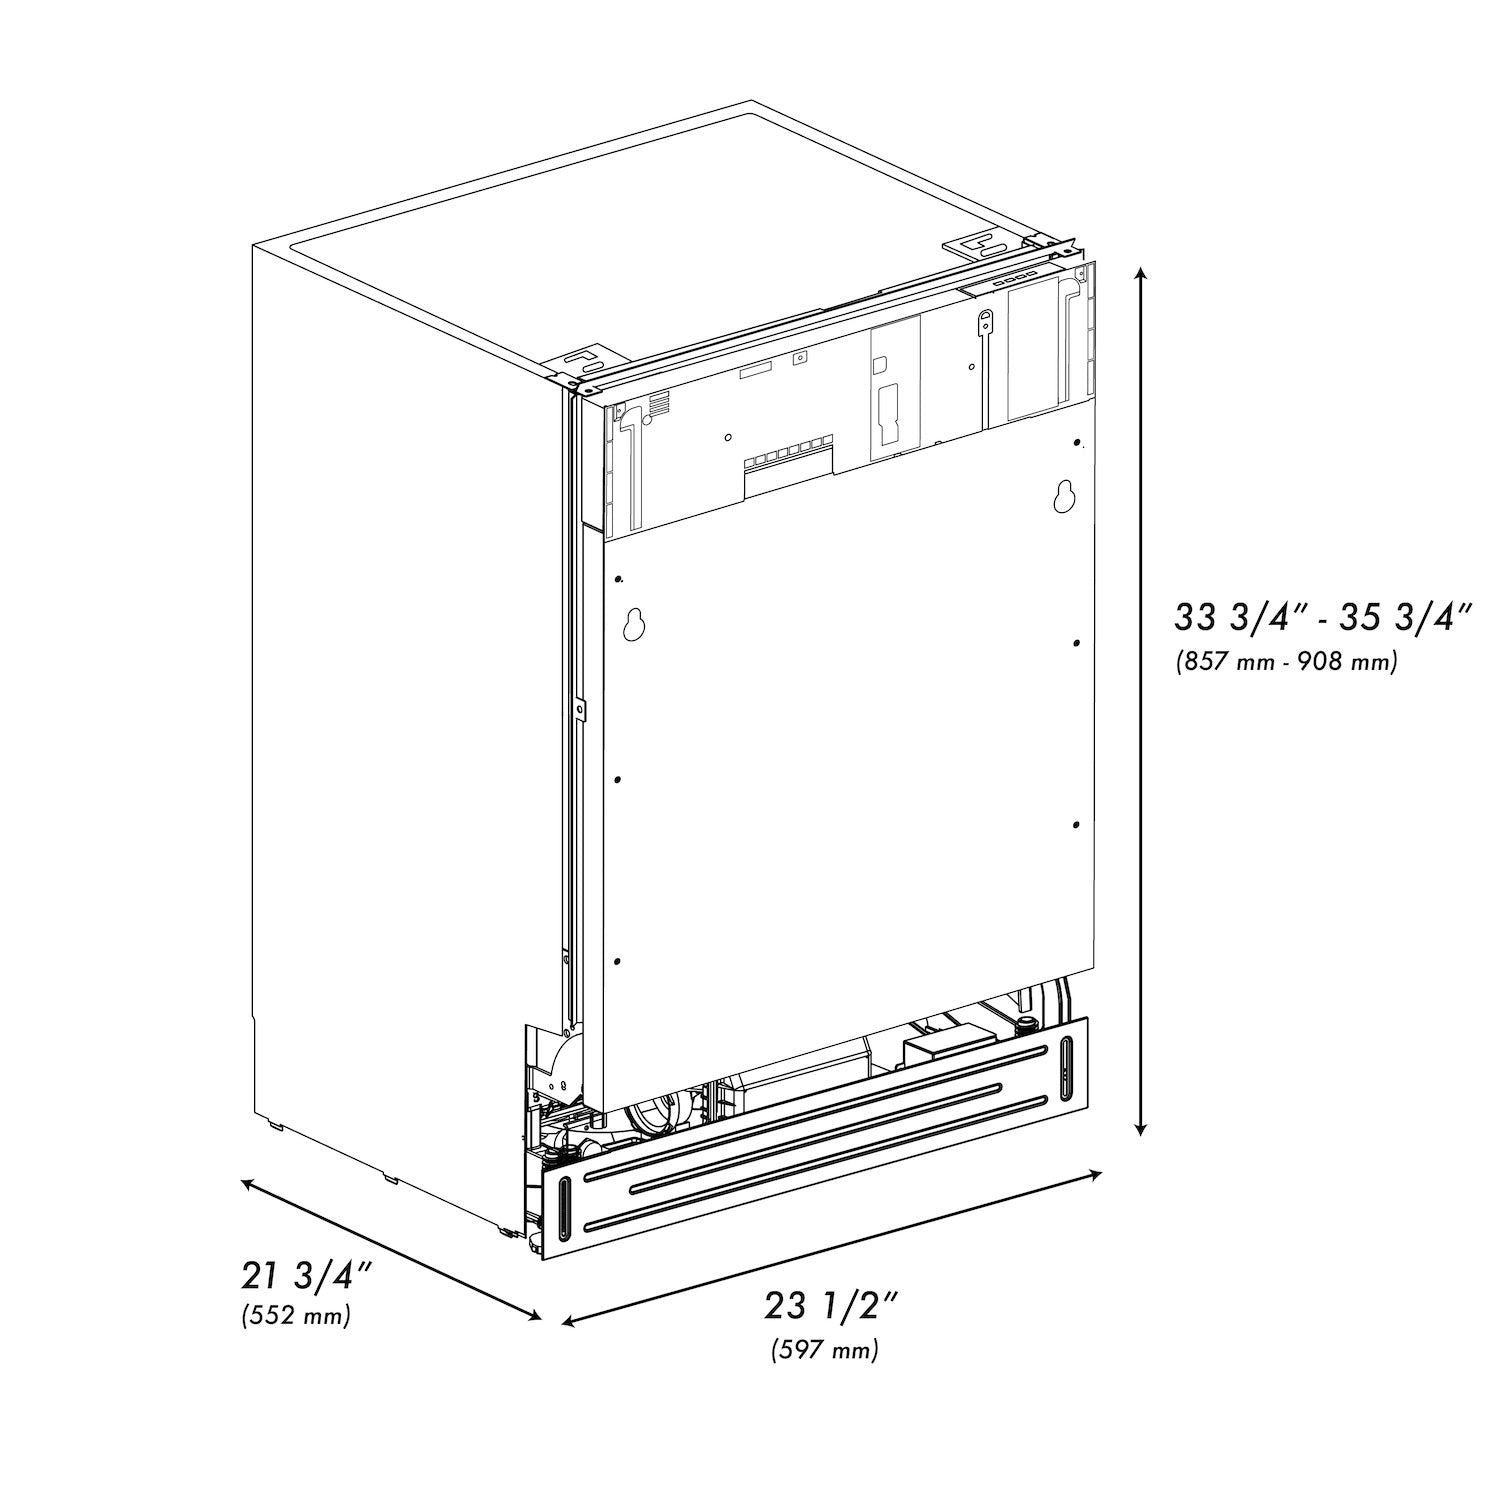 ZLINE 24" DWV-24 Tallac Dishwasher dimensional diagram.